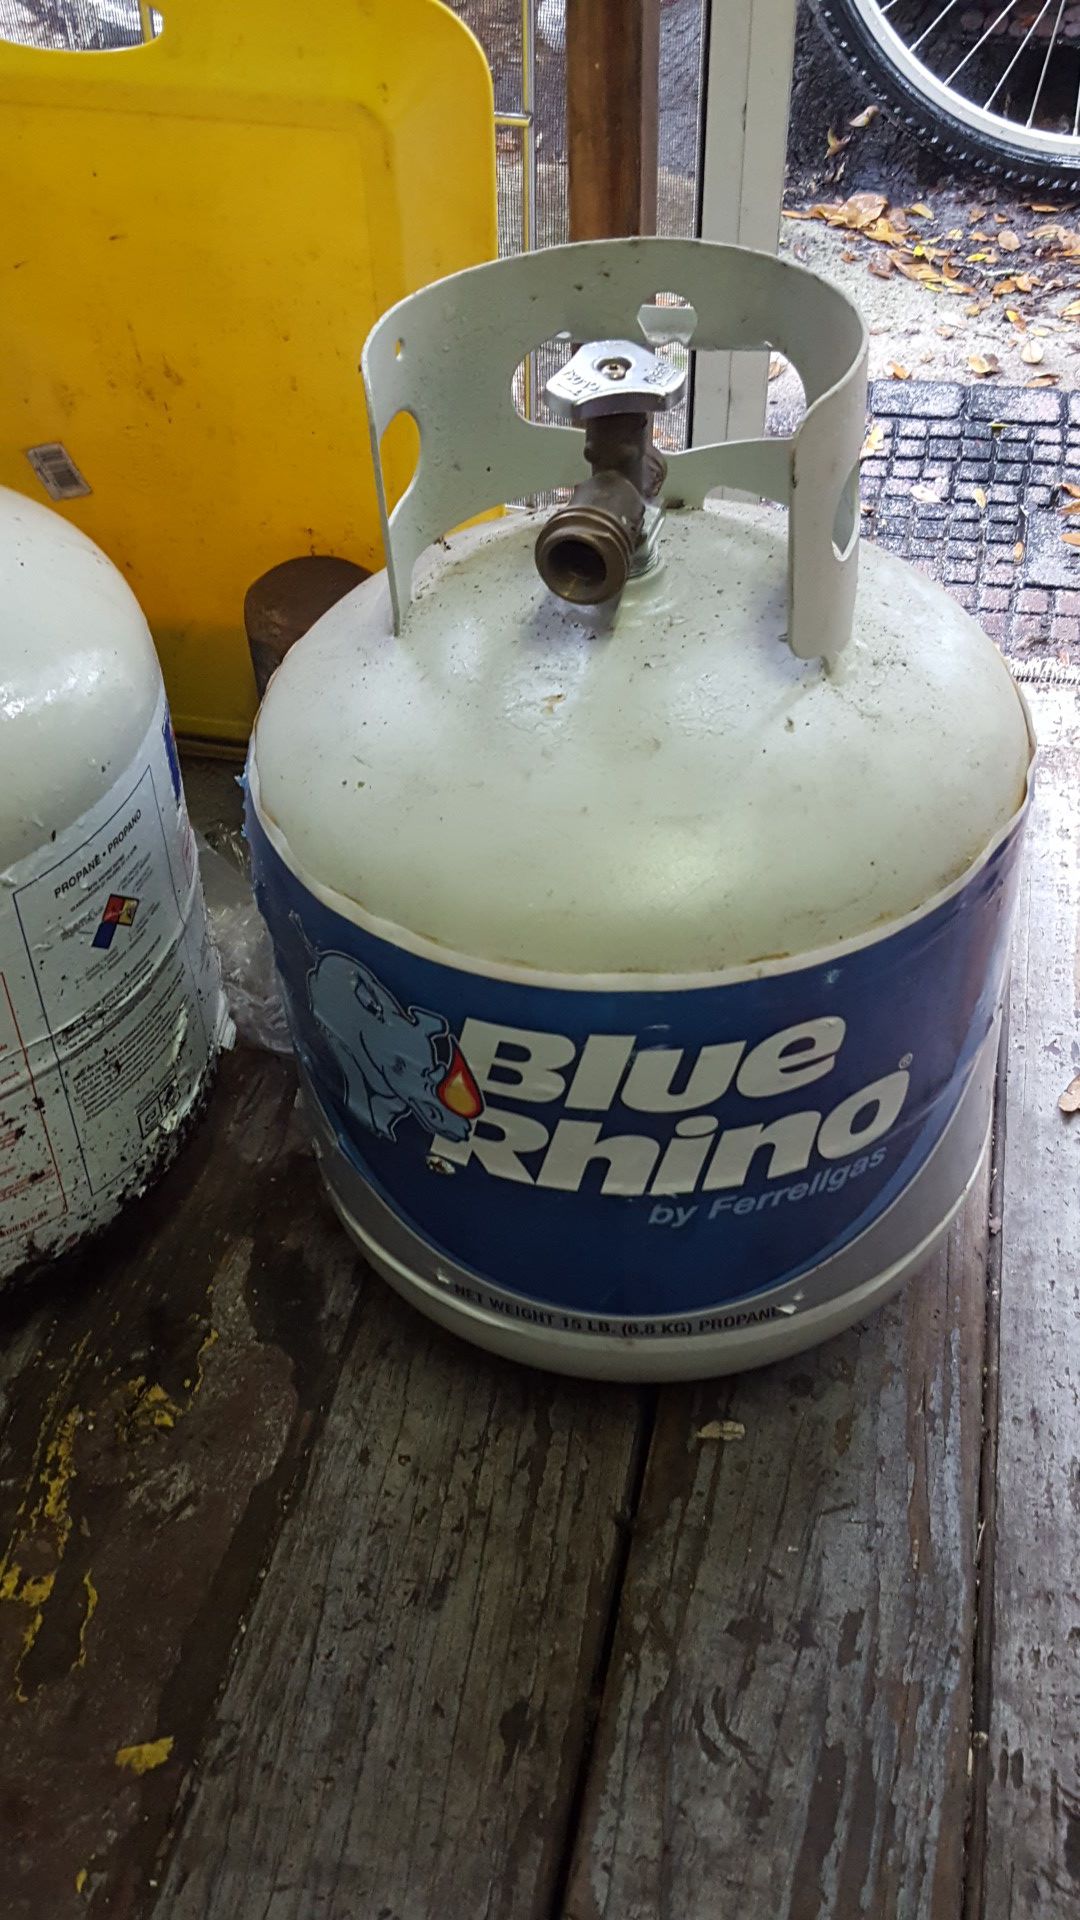 propane (BLUE RIHNO)